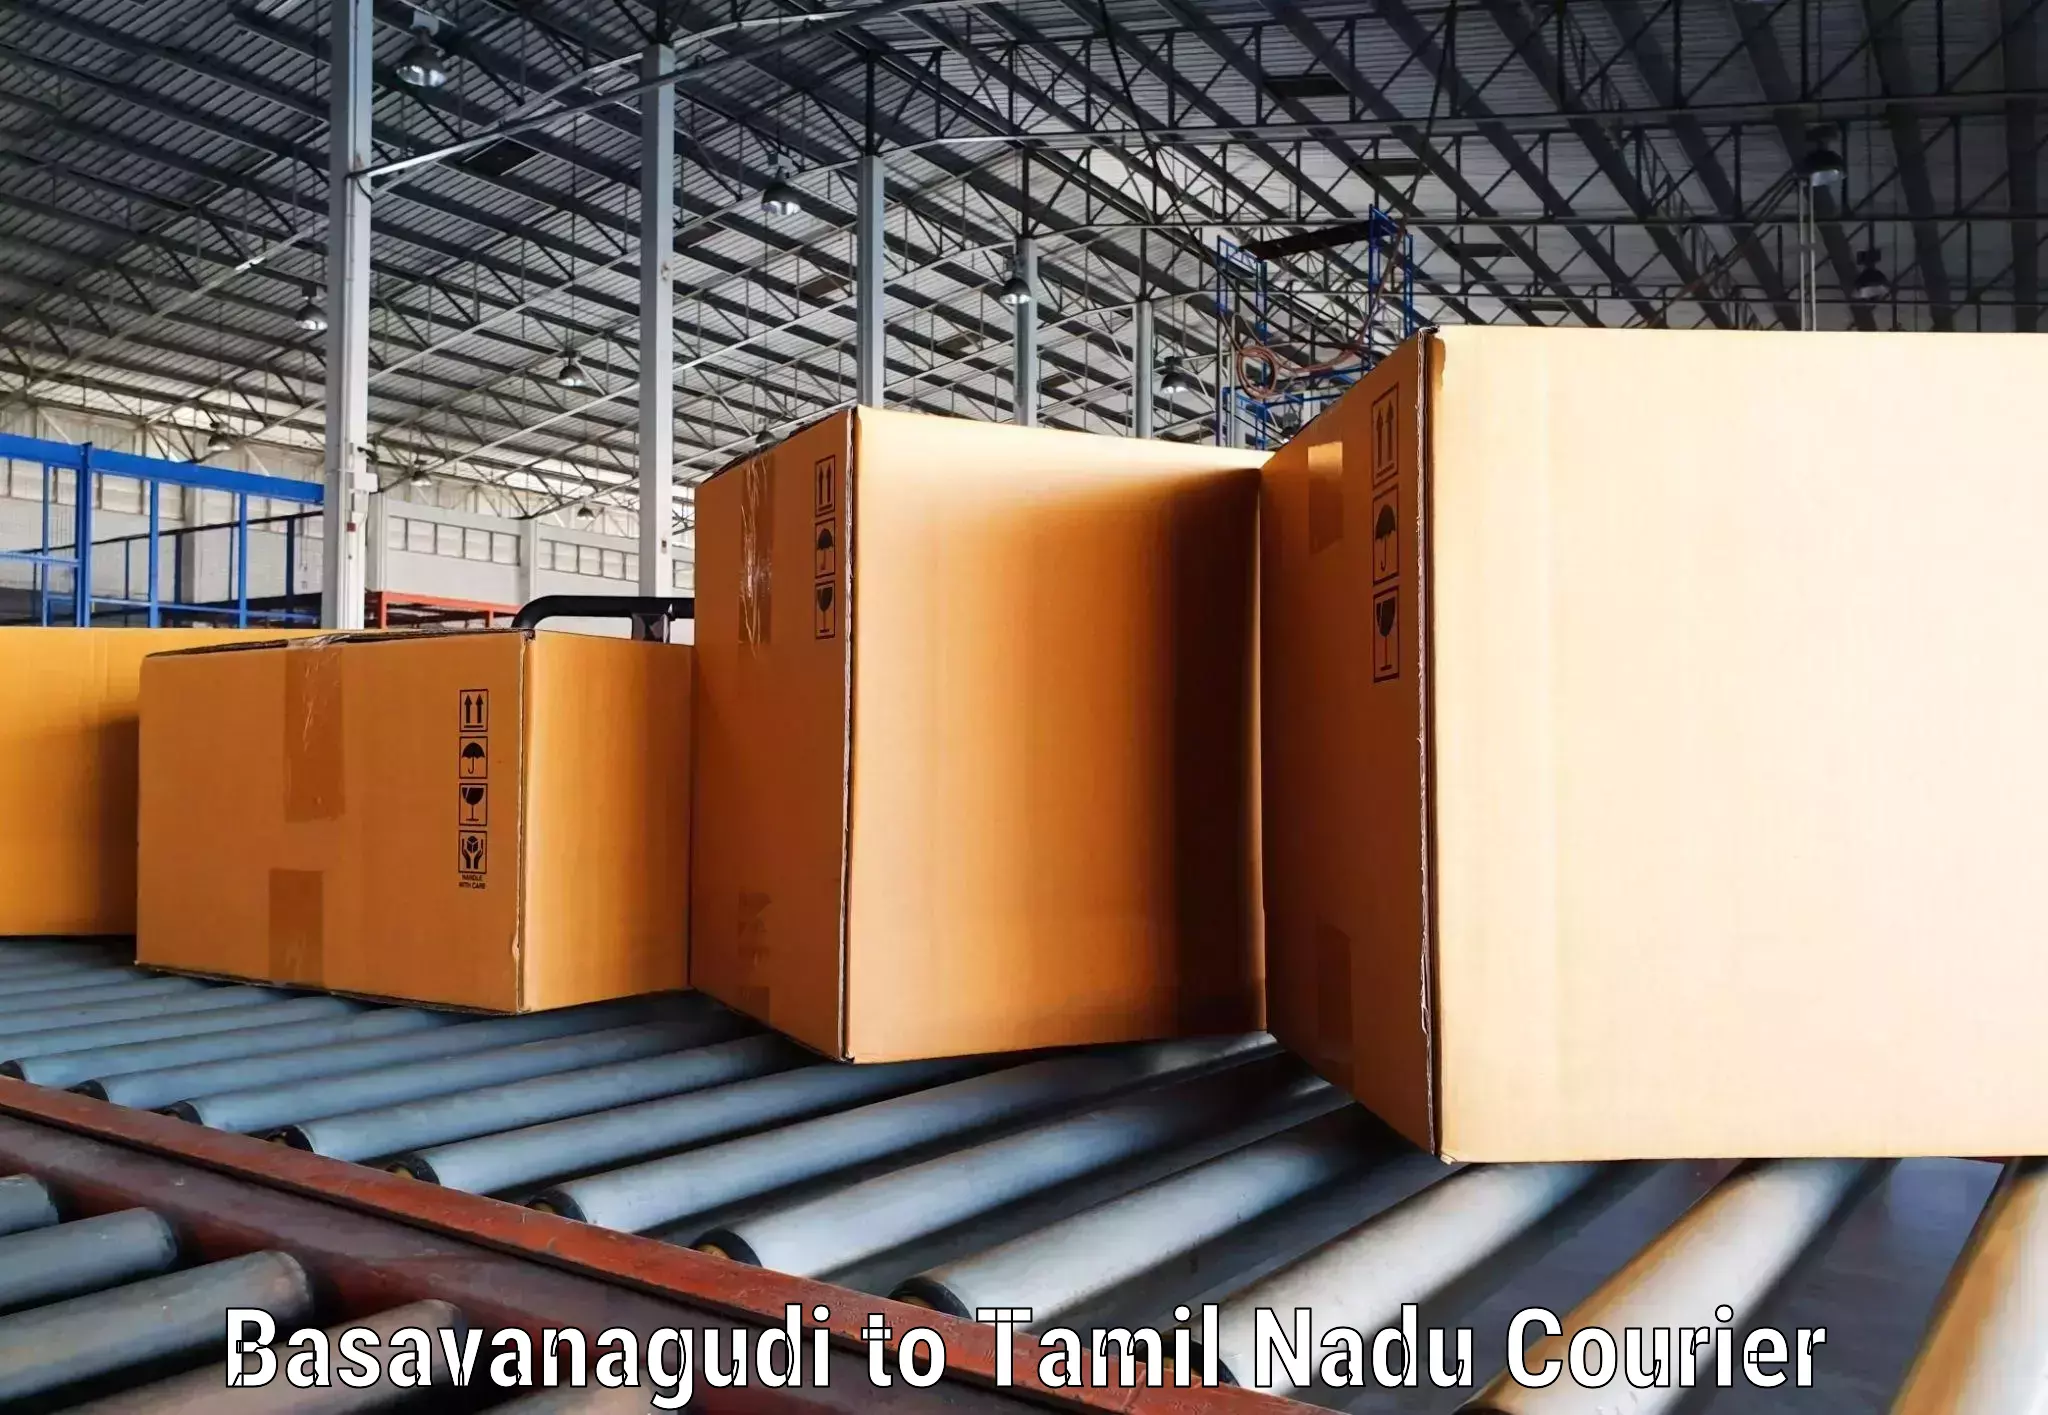 User-friendly delivery service Basavanagudi to Sankari